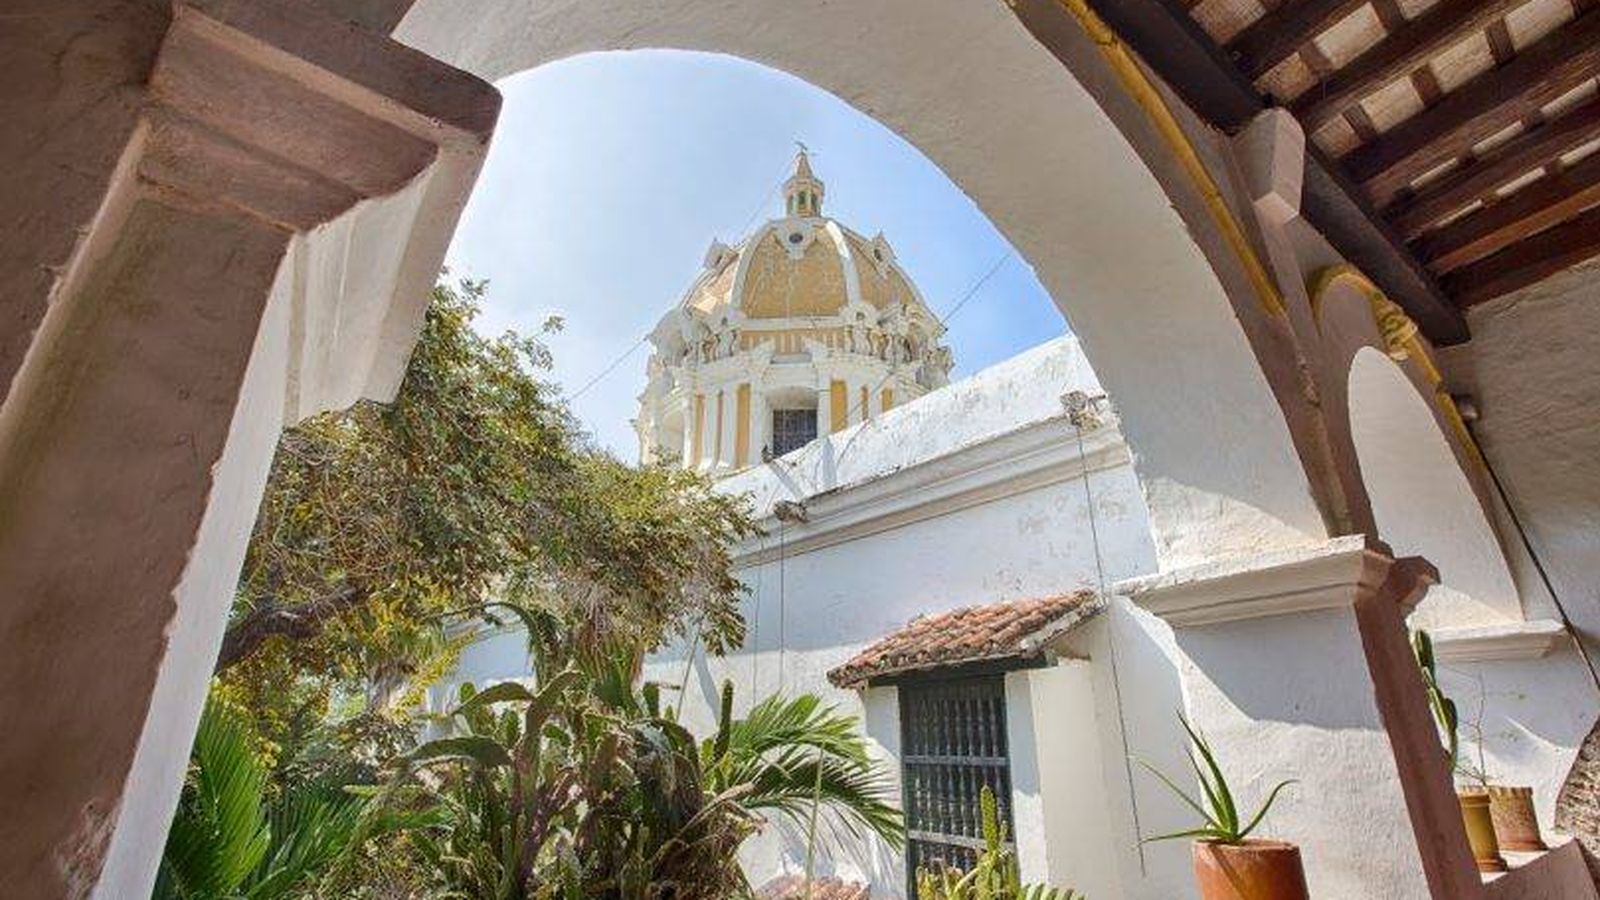 Foto: Santuario de San Pedro Claver en Cartagena de Indias (sanpedroclaver.co)